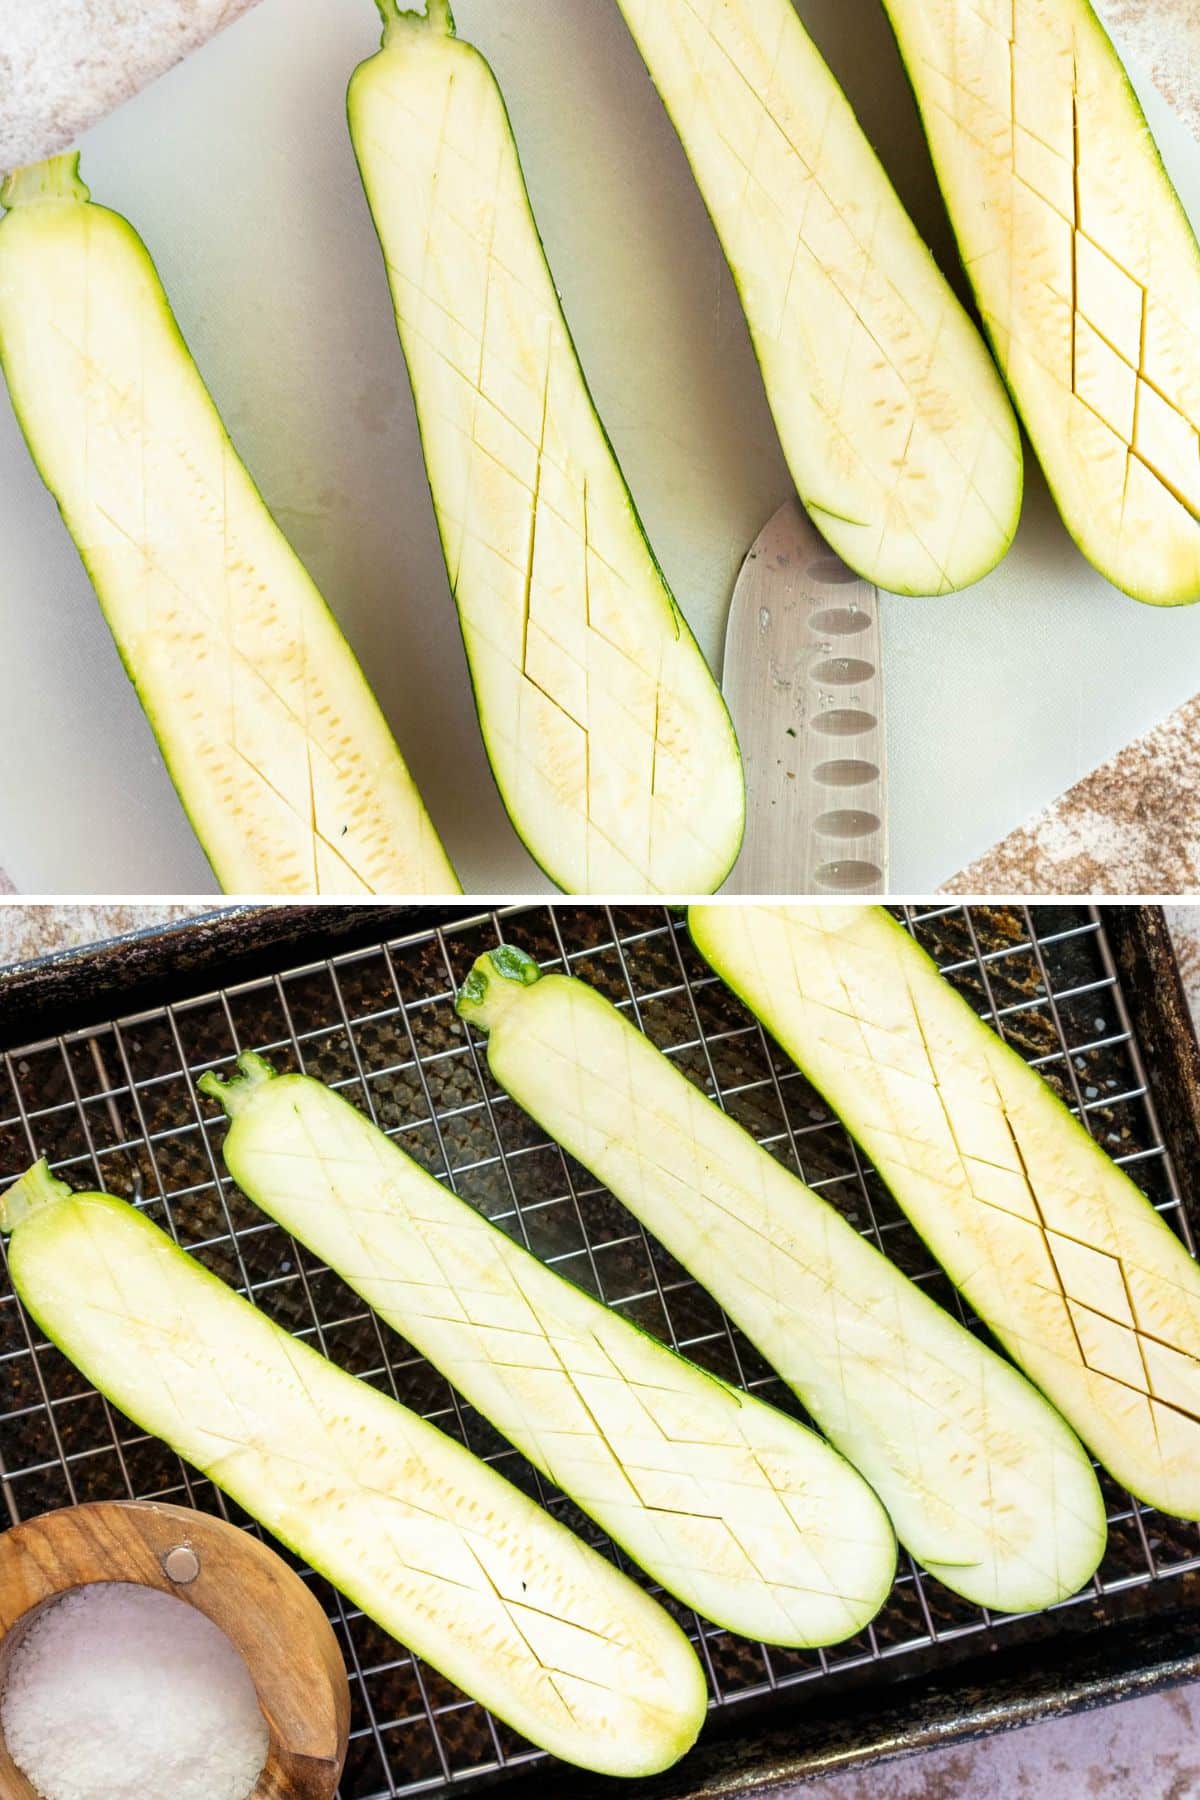 Cutting a cross hatch pattern in the sliced zucchini.